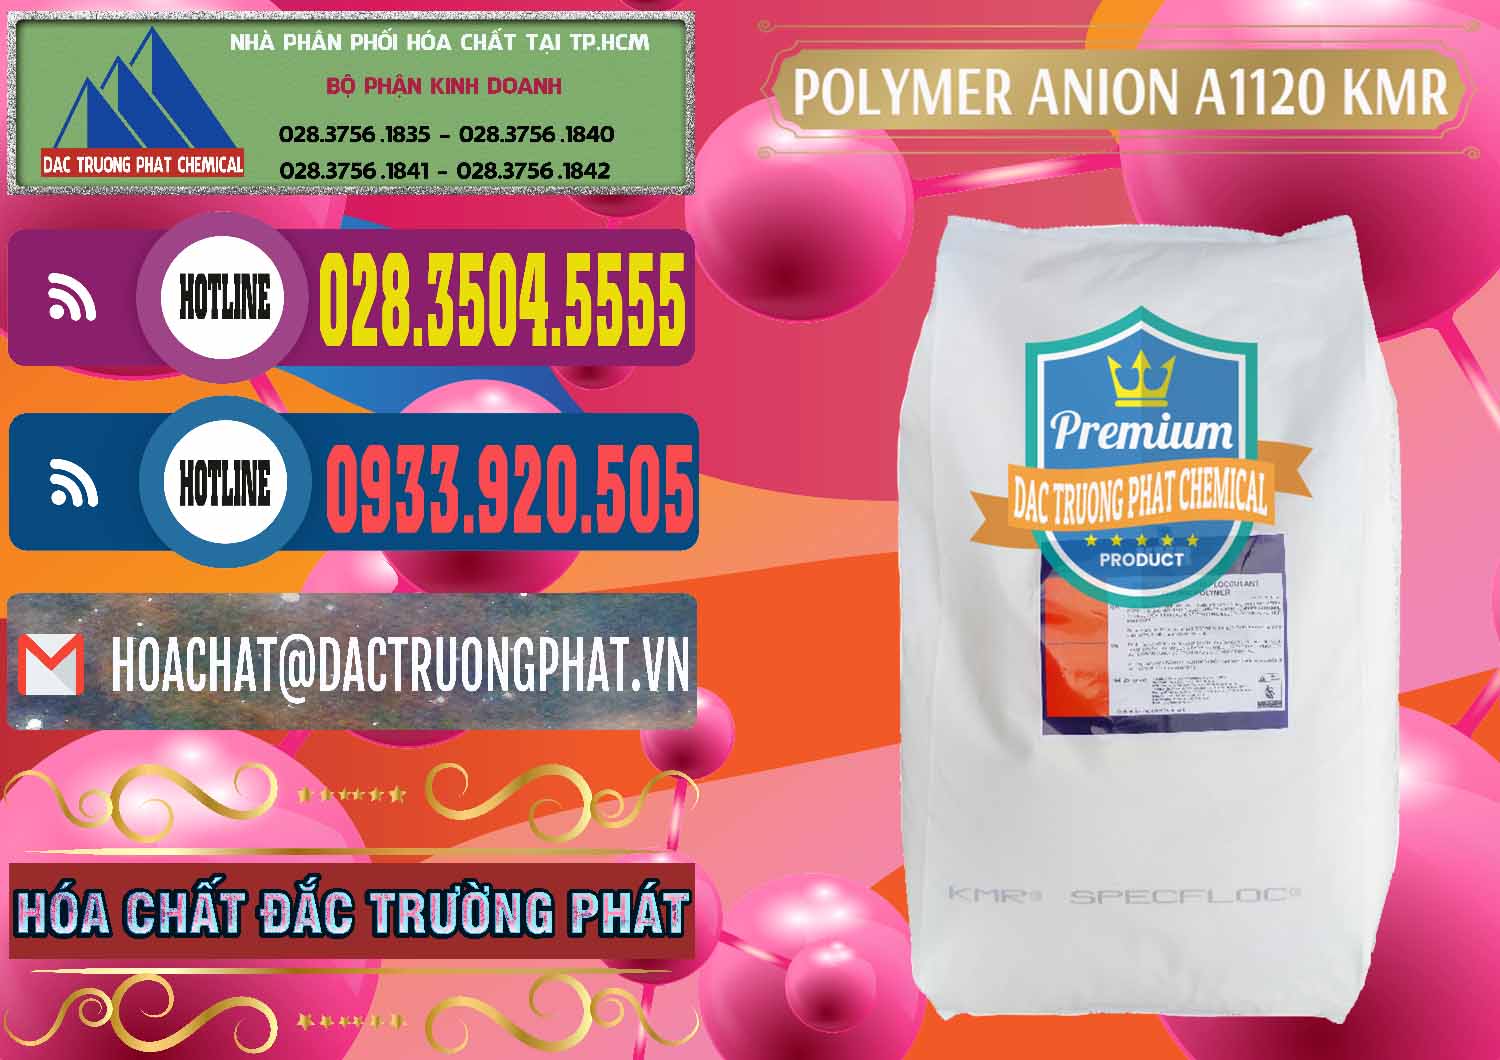 Cty chuyên cung ứng - bán Polymer Anion A1120 - KMR Anh Quốc England - 0119 - Công ty cung ứng ( phân phối ) hóa chất tại TP.HCM - muabanhoachat.com.vn